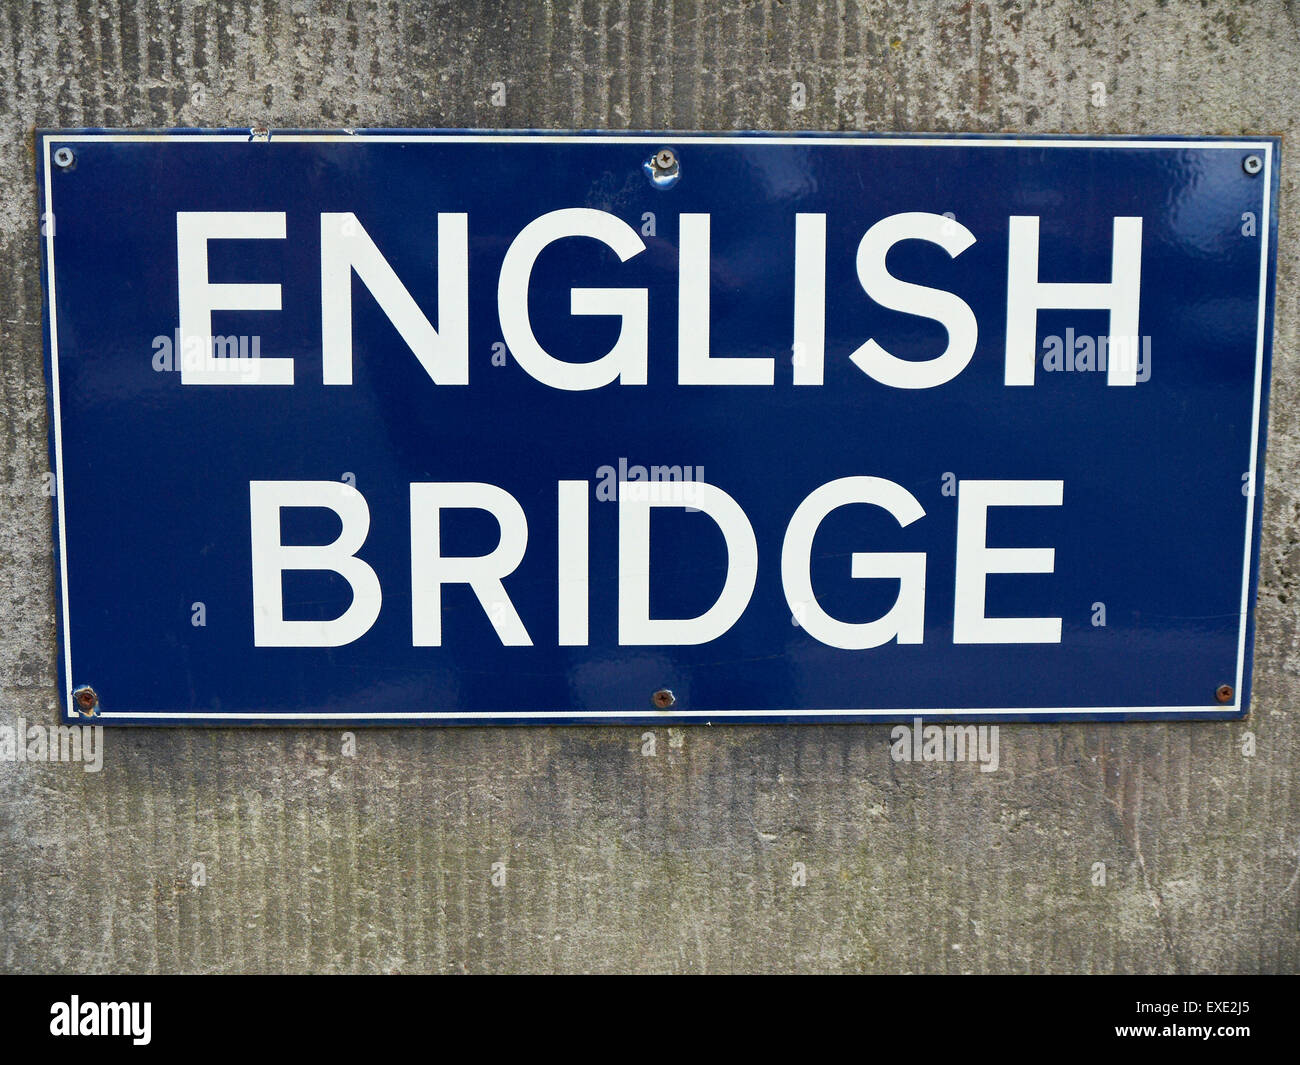 English bridge è il nome di un bridge nello Shrewsbury Shropshire UK Foto  stock - Alamy